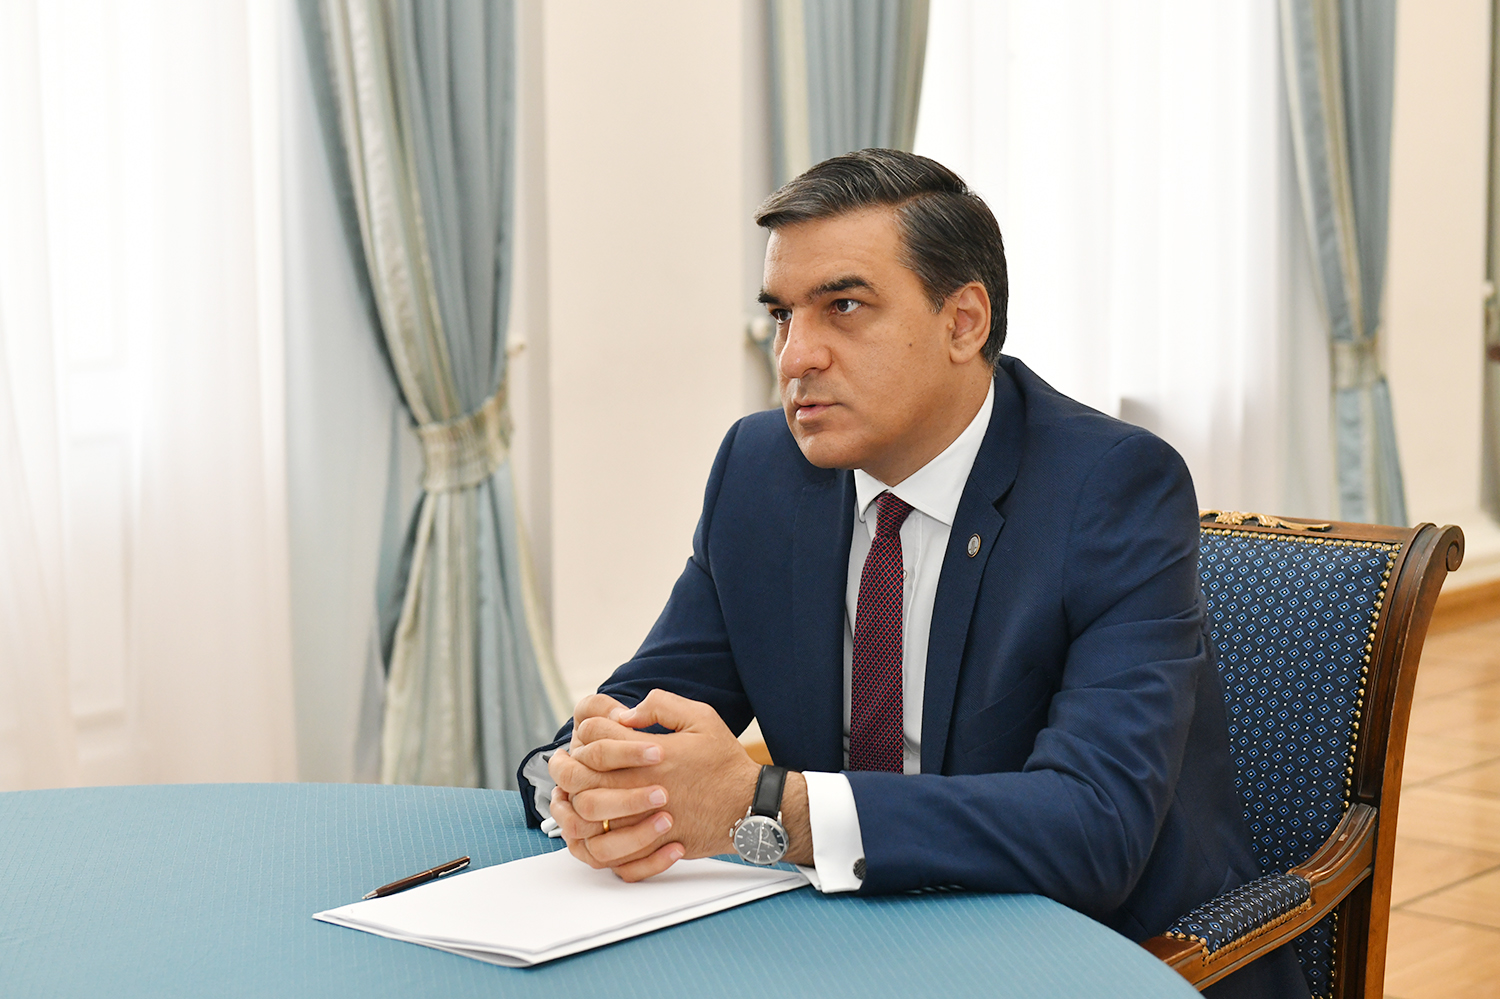 Арман Татоян имеет высокую репутацию среди граждан - опрос